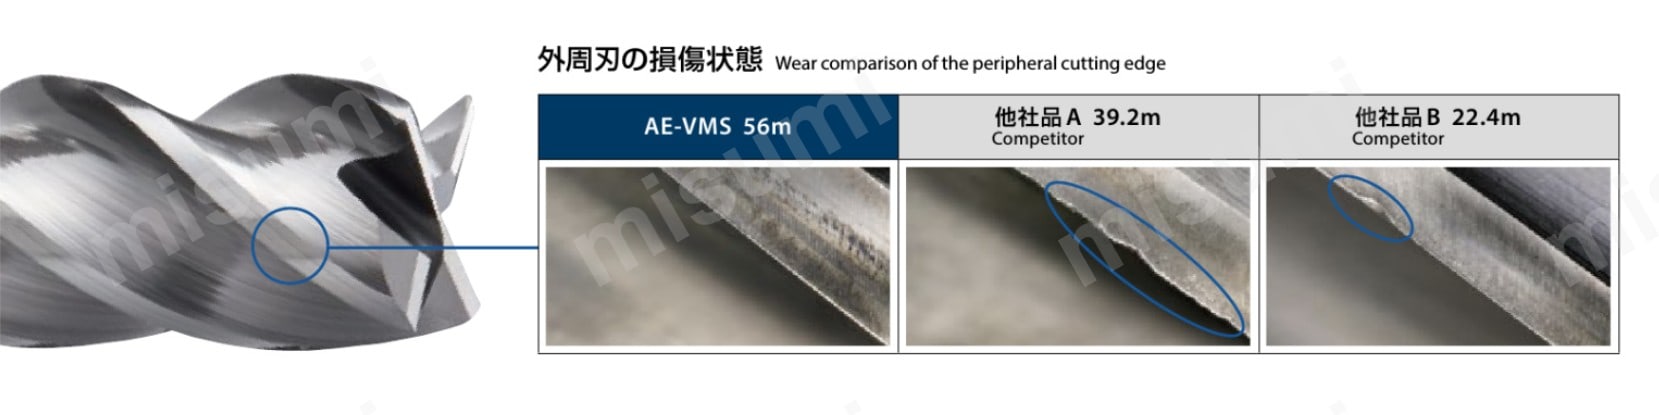 AE-VMS10XR1.5 | AE-VMS AE-VMシリーズ 超硬防振型エンドミル ショート